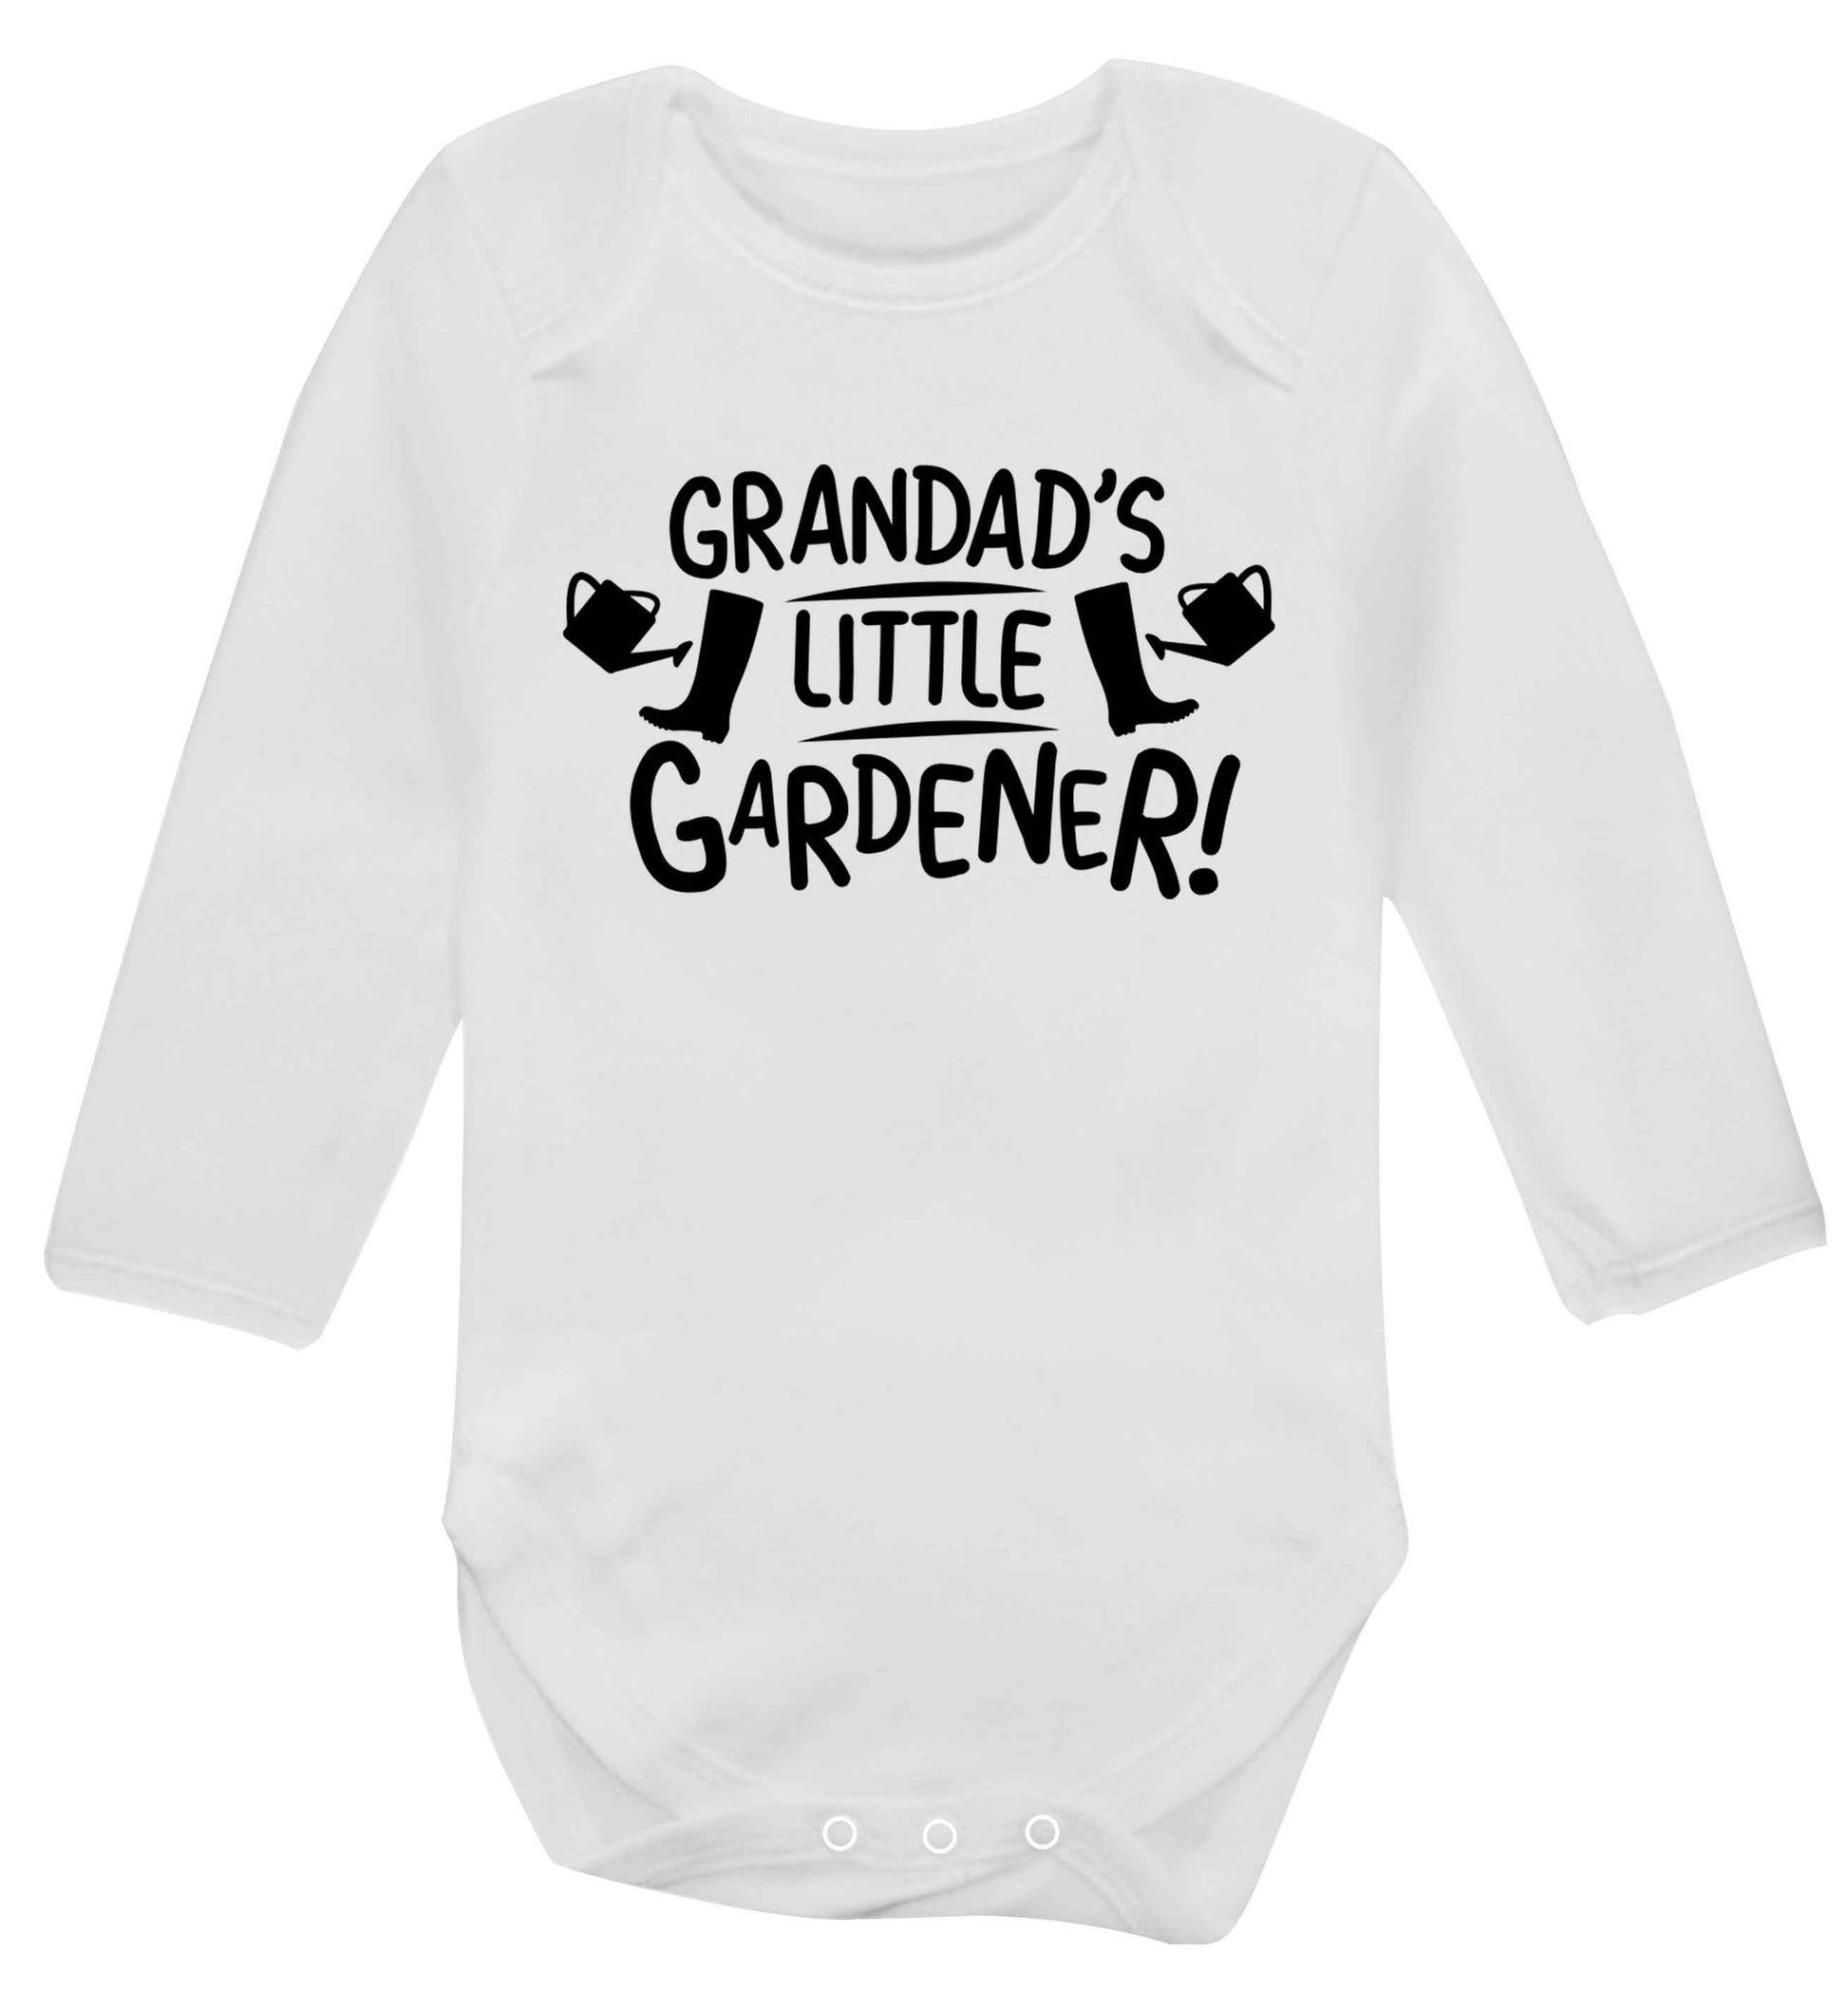 Grandad's little gardener Baby Vest long sleeved white 6-12 months